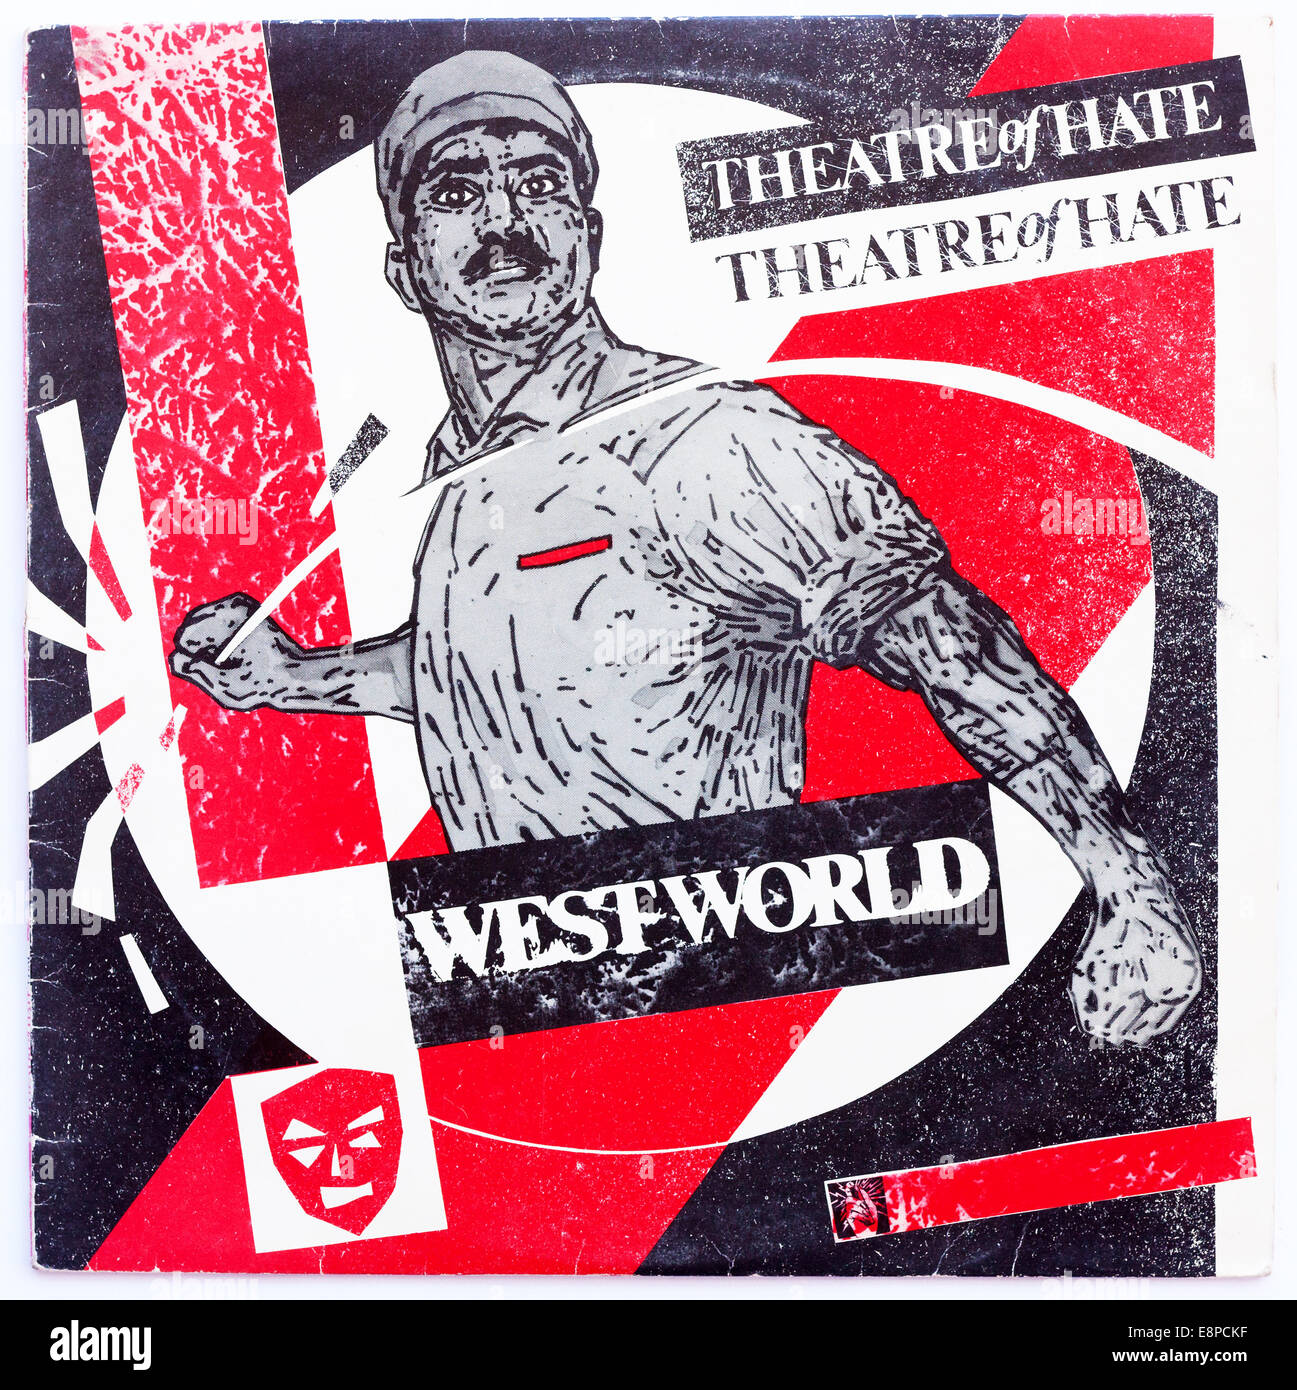 Pochette pour le théâtre de la haine - Westworld, 1982 album de vinyle sur Burning Rome Records - usage éditorial uniquement Banque D'Images